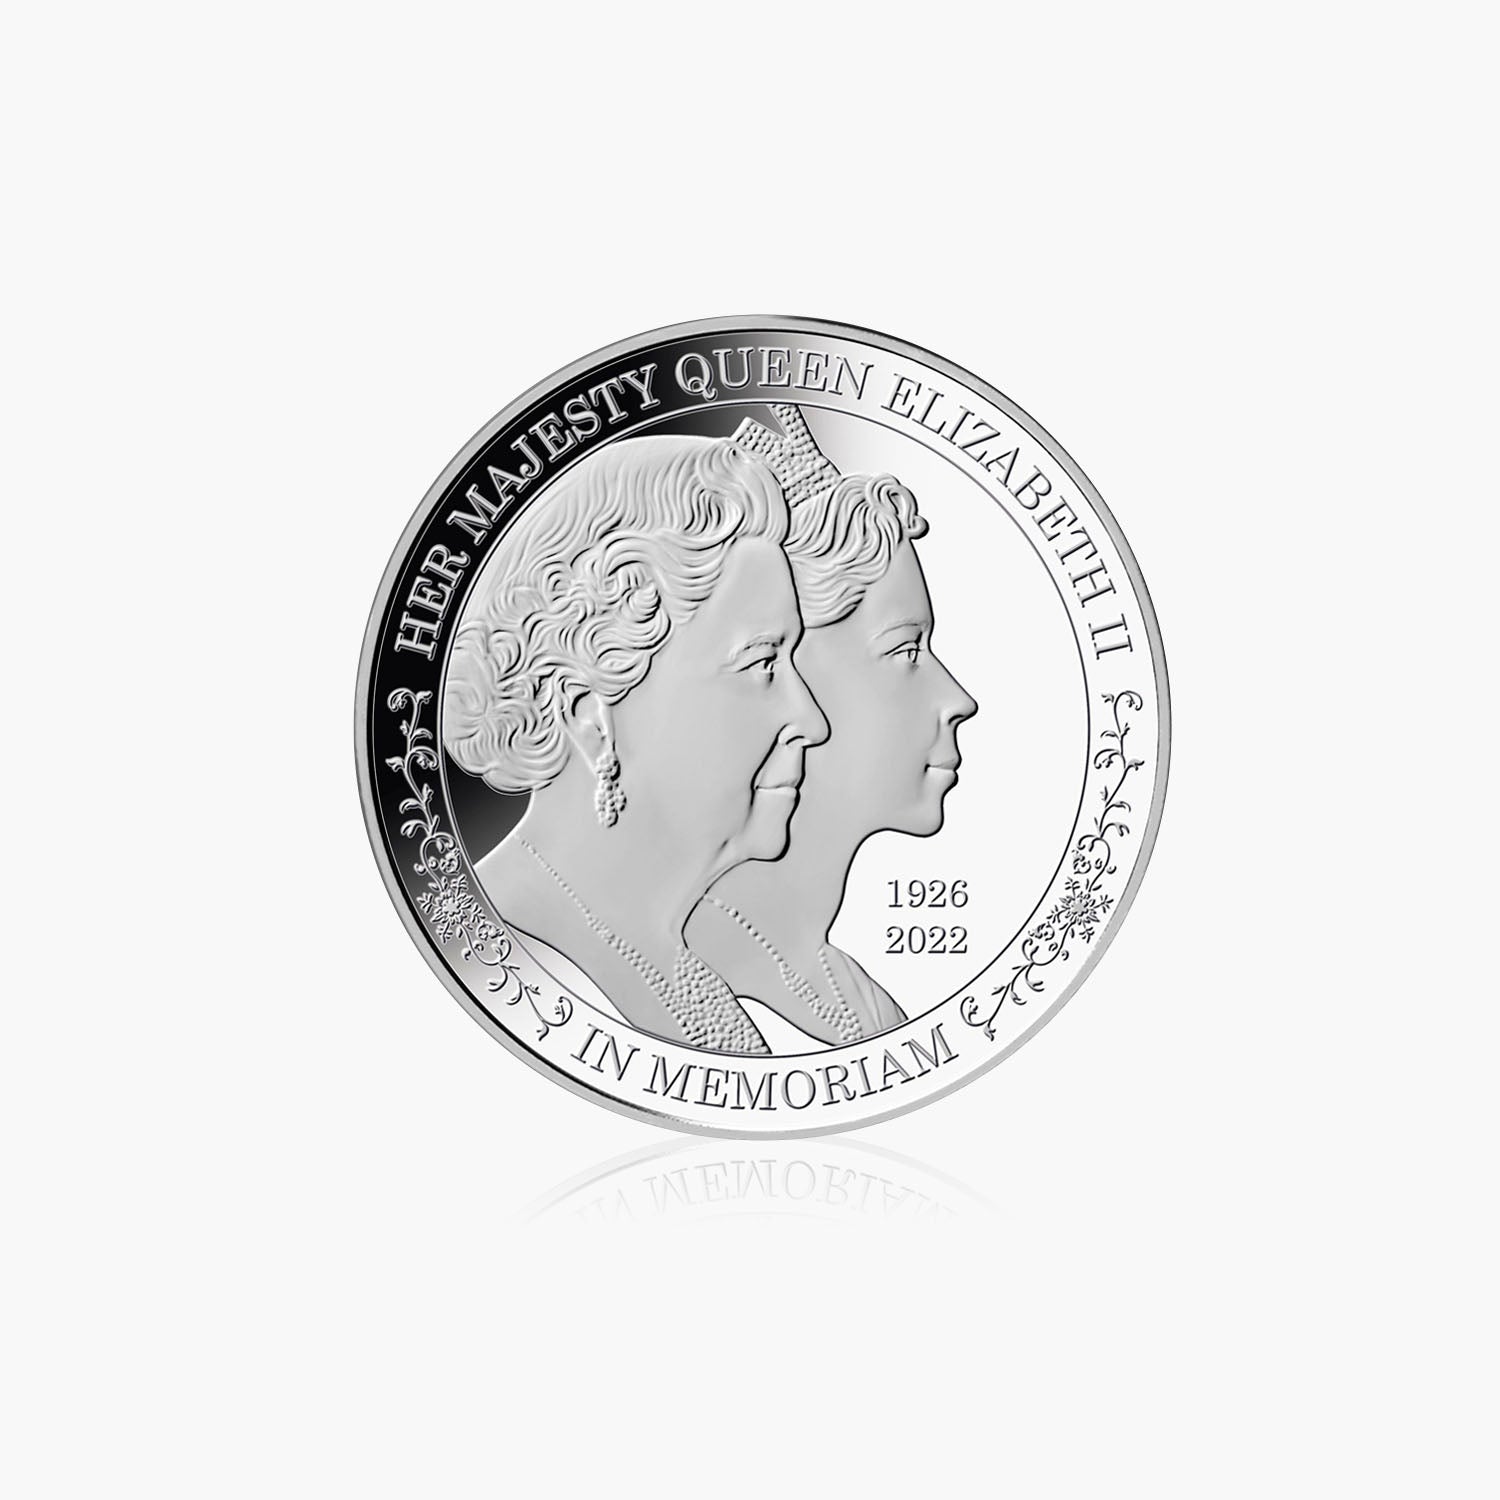 クイーン エリザベス 2 世 ダブル ポートレート 1オンス ソリッド シルバー コイン